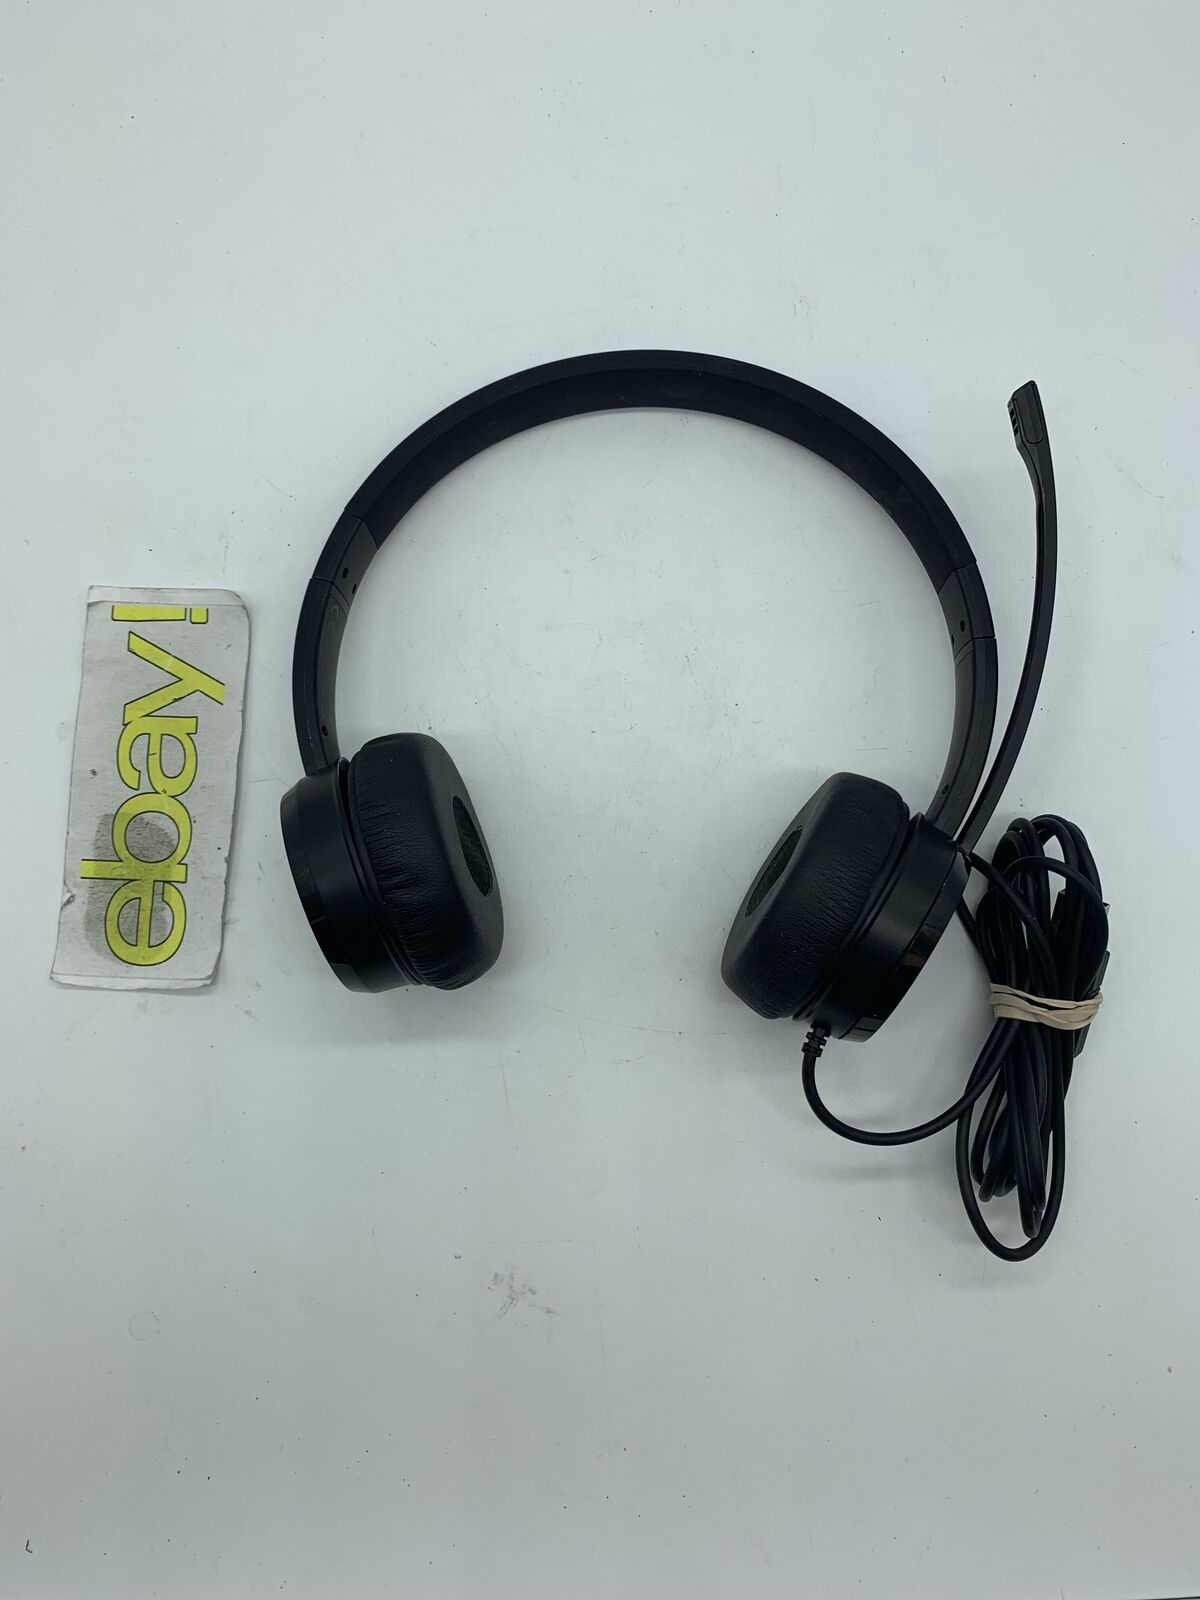 Lenovo 100 Stereo USB Headset Model L09 Office Headphones 